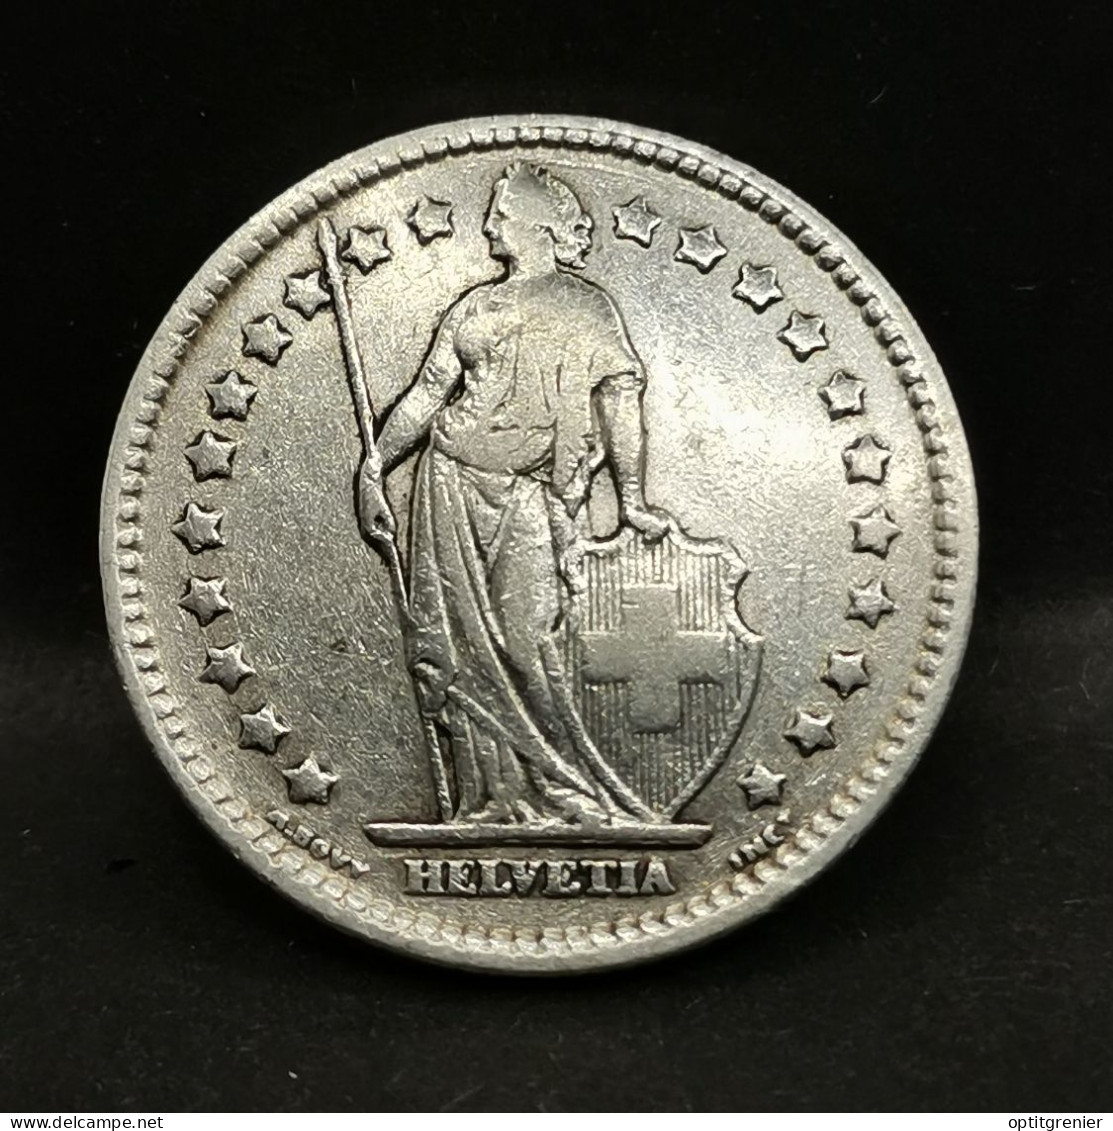 1 FRANC ARGENT 1913 B BERNE HELVETIA DEBOUT SUISSE / SWITZERLAND SILVER - 1 Franc